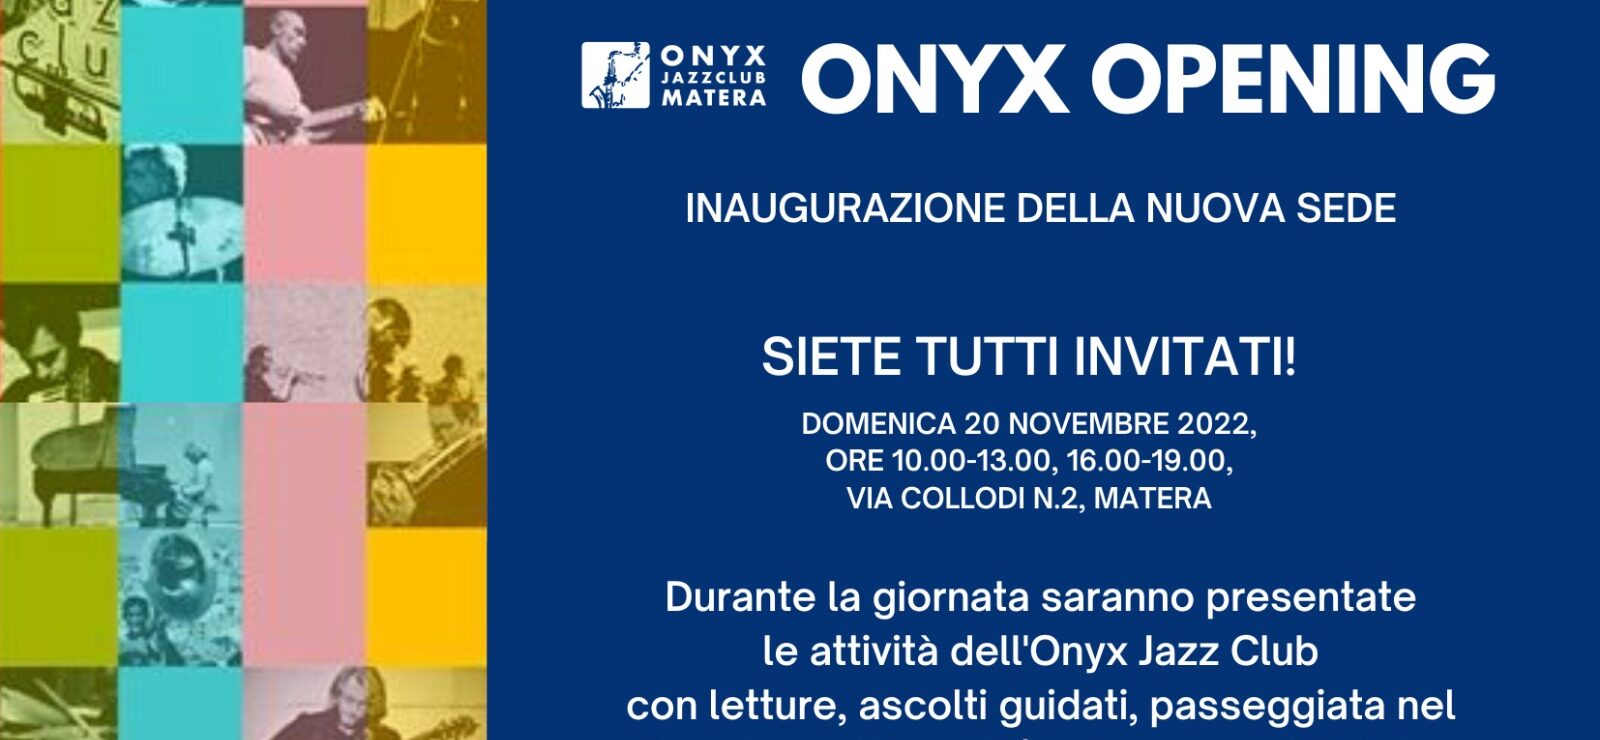 L’Onyx Jazz Club inaugura la sua nuova sede a Matera con una intera giornata di attività